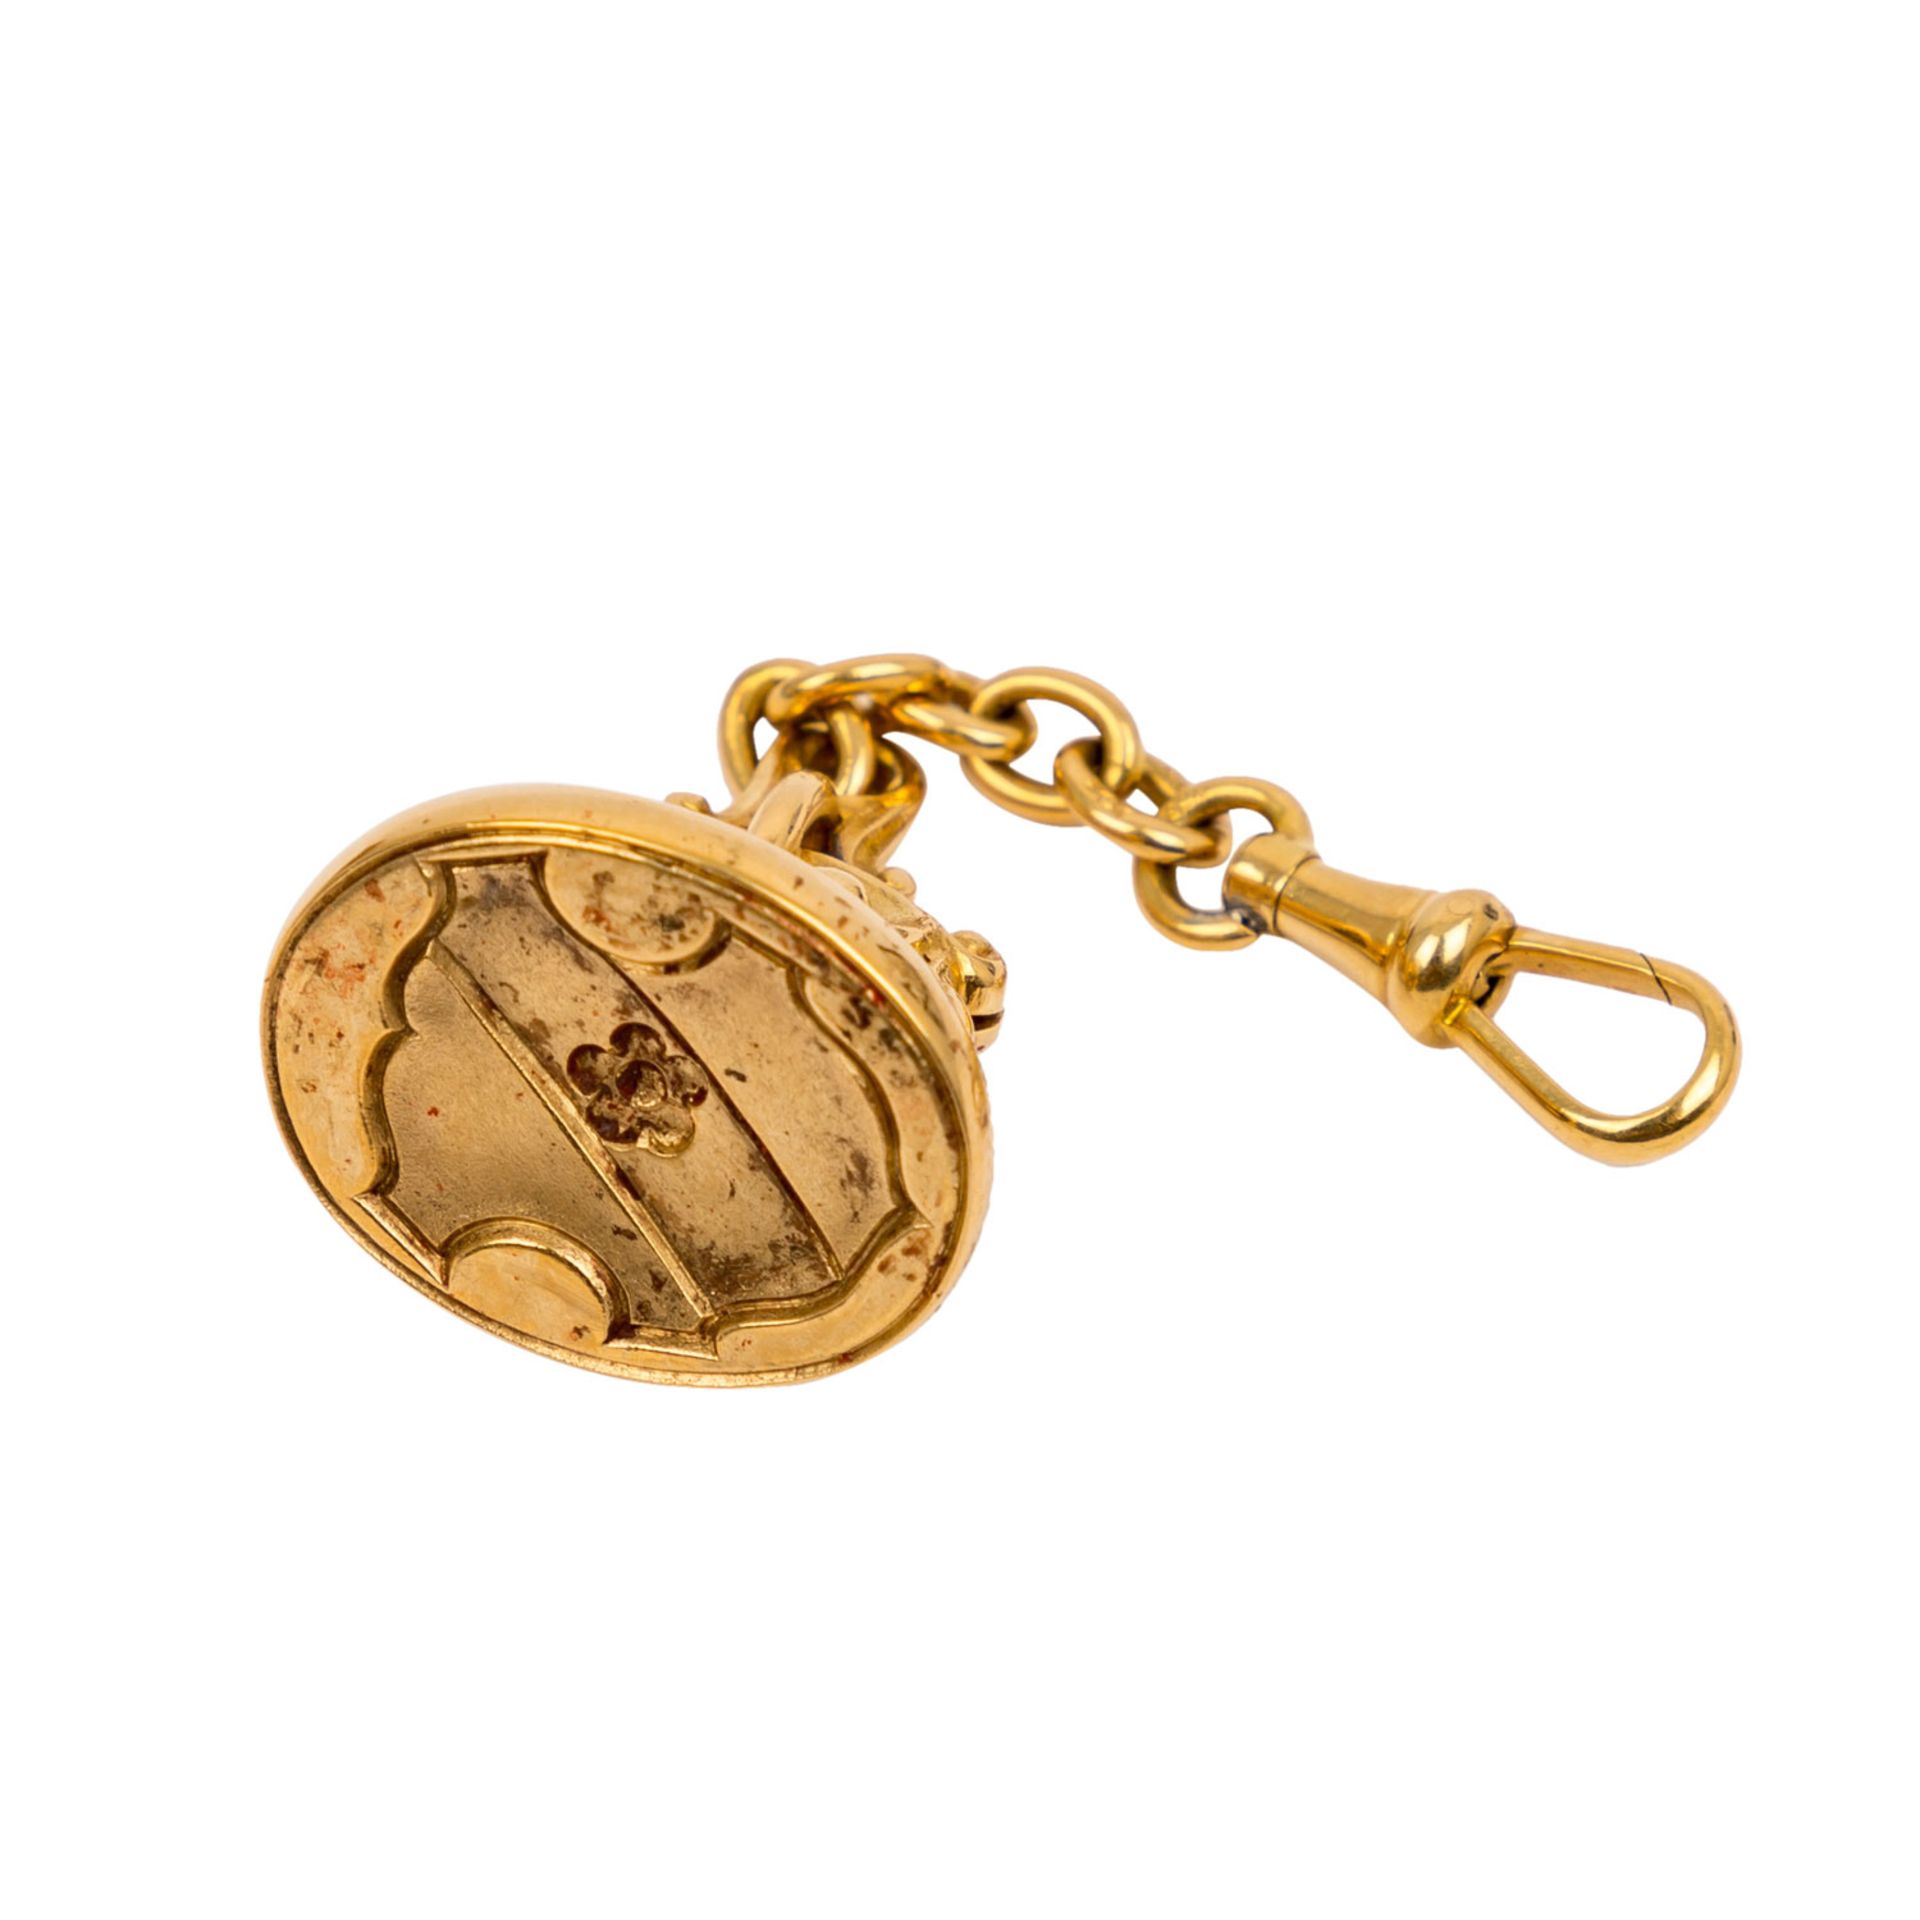 Konvolut aus 6 goldenen Medaillen und 1 Siegelanhänger in Gold - - Image 3 of 3